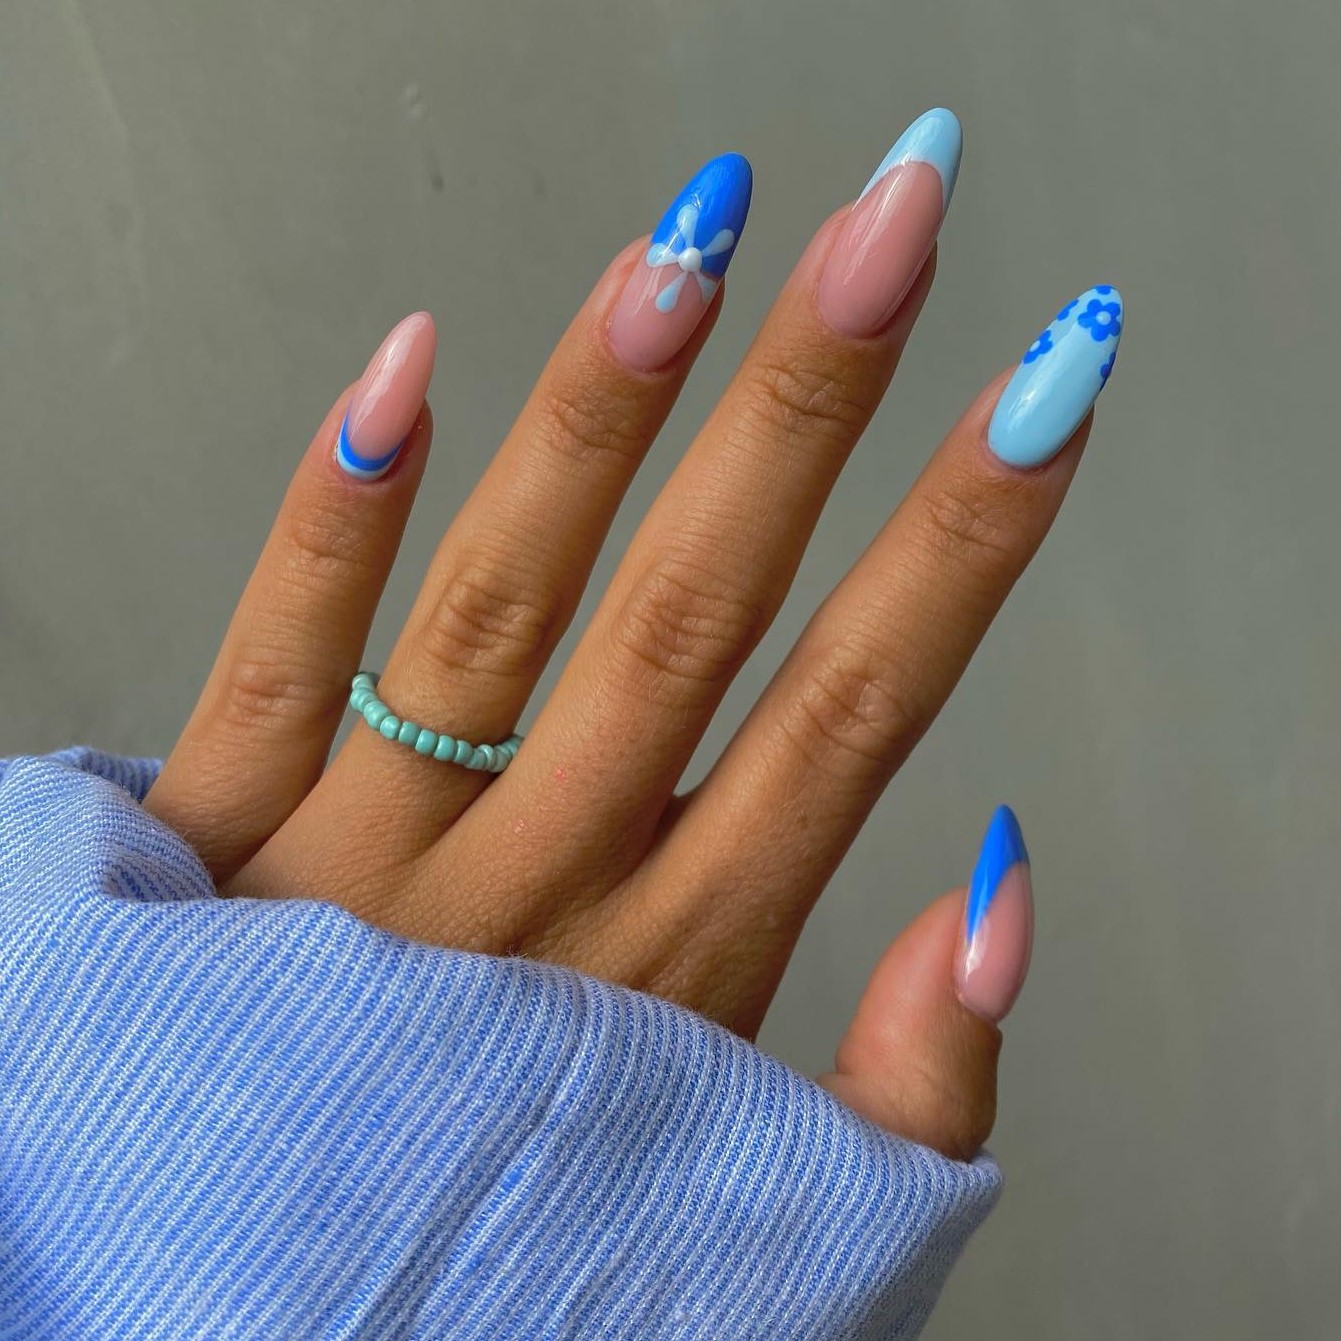 Những chiếc móng tay với thiết kế độc đáo của Blue nail designs chắc chắn sẽ tạo nên ấn tượng lớn với những người xung quanh bạn. Hãy trổ tài, thể hiện cá tính và thể hiện chính mình với Blue nail designs!